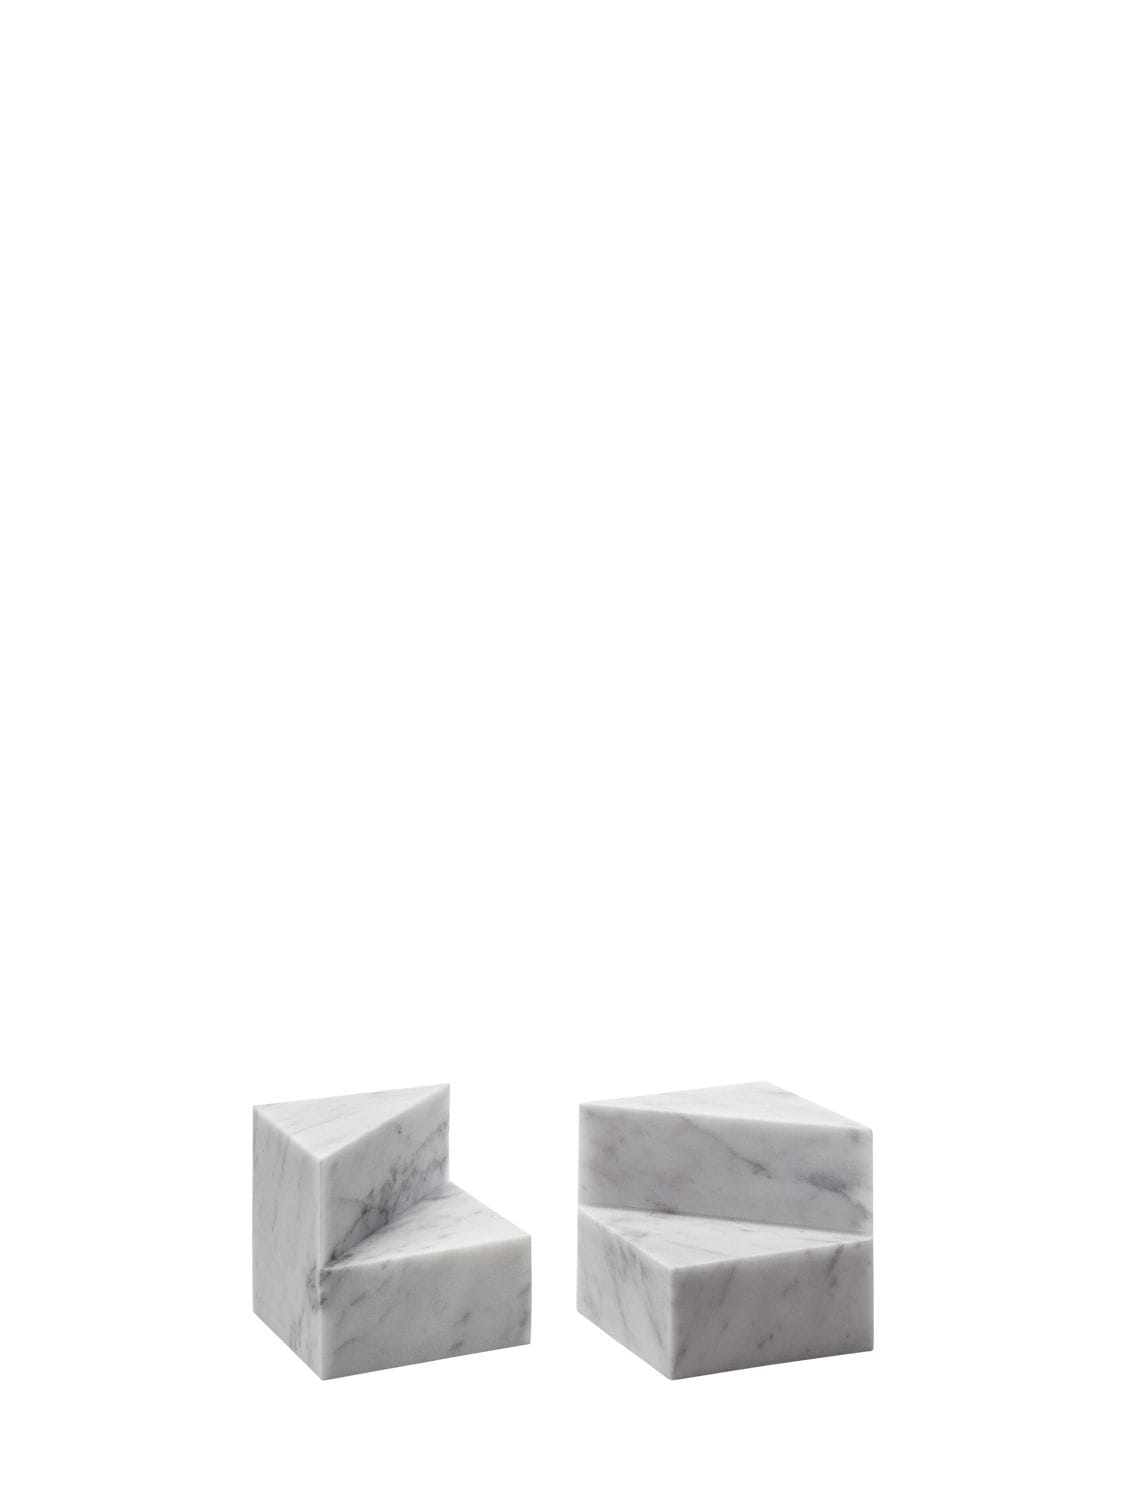 Salvatori Kilos Cube White Carrara Bookends